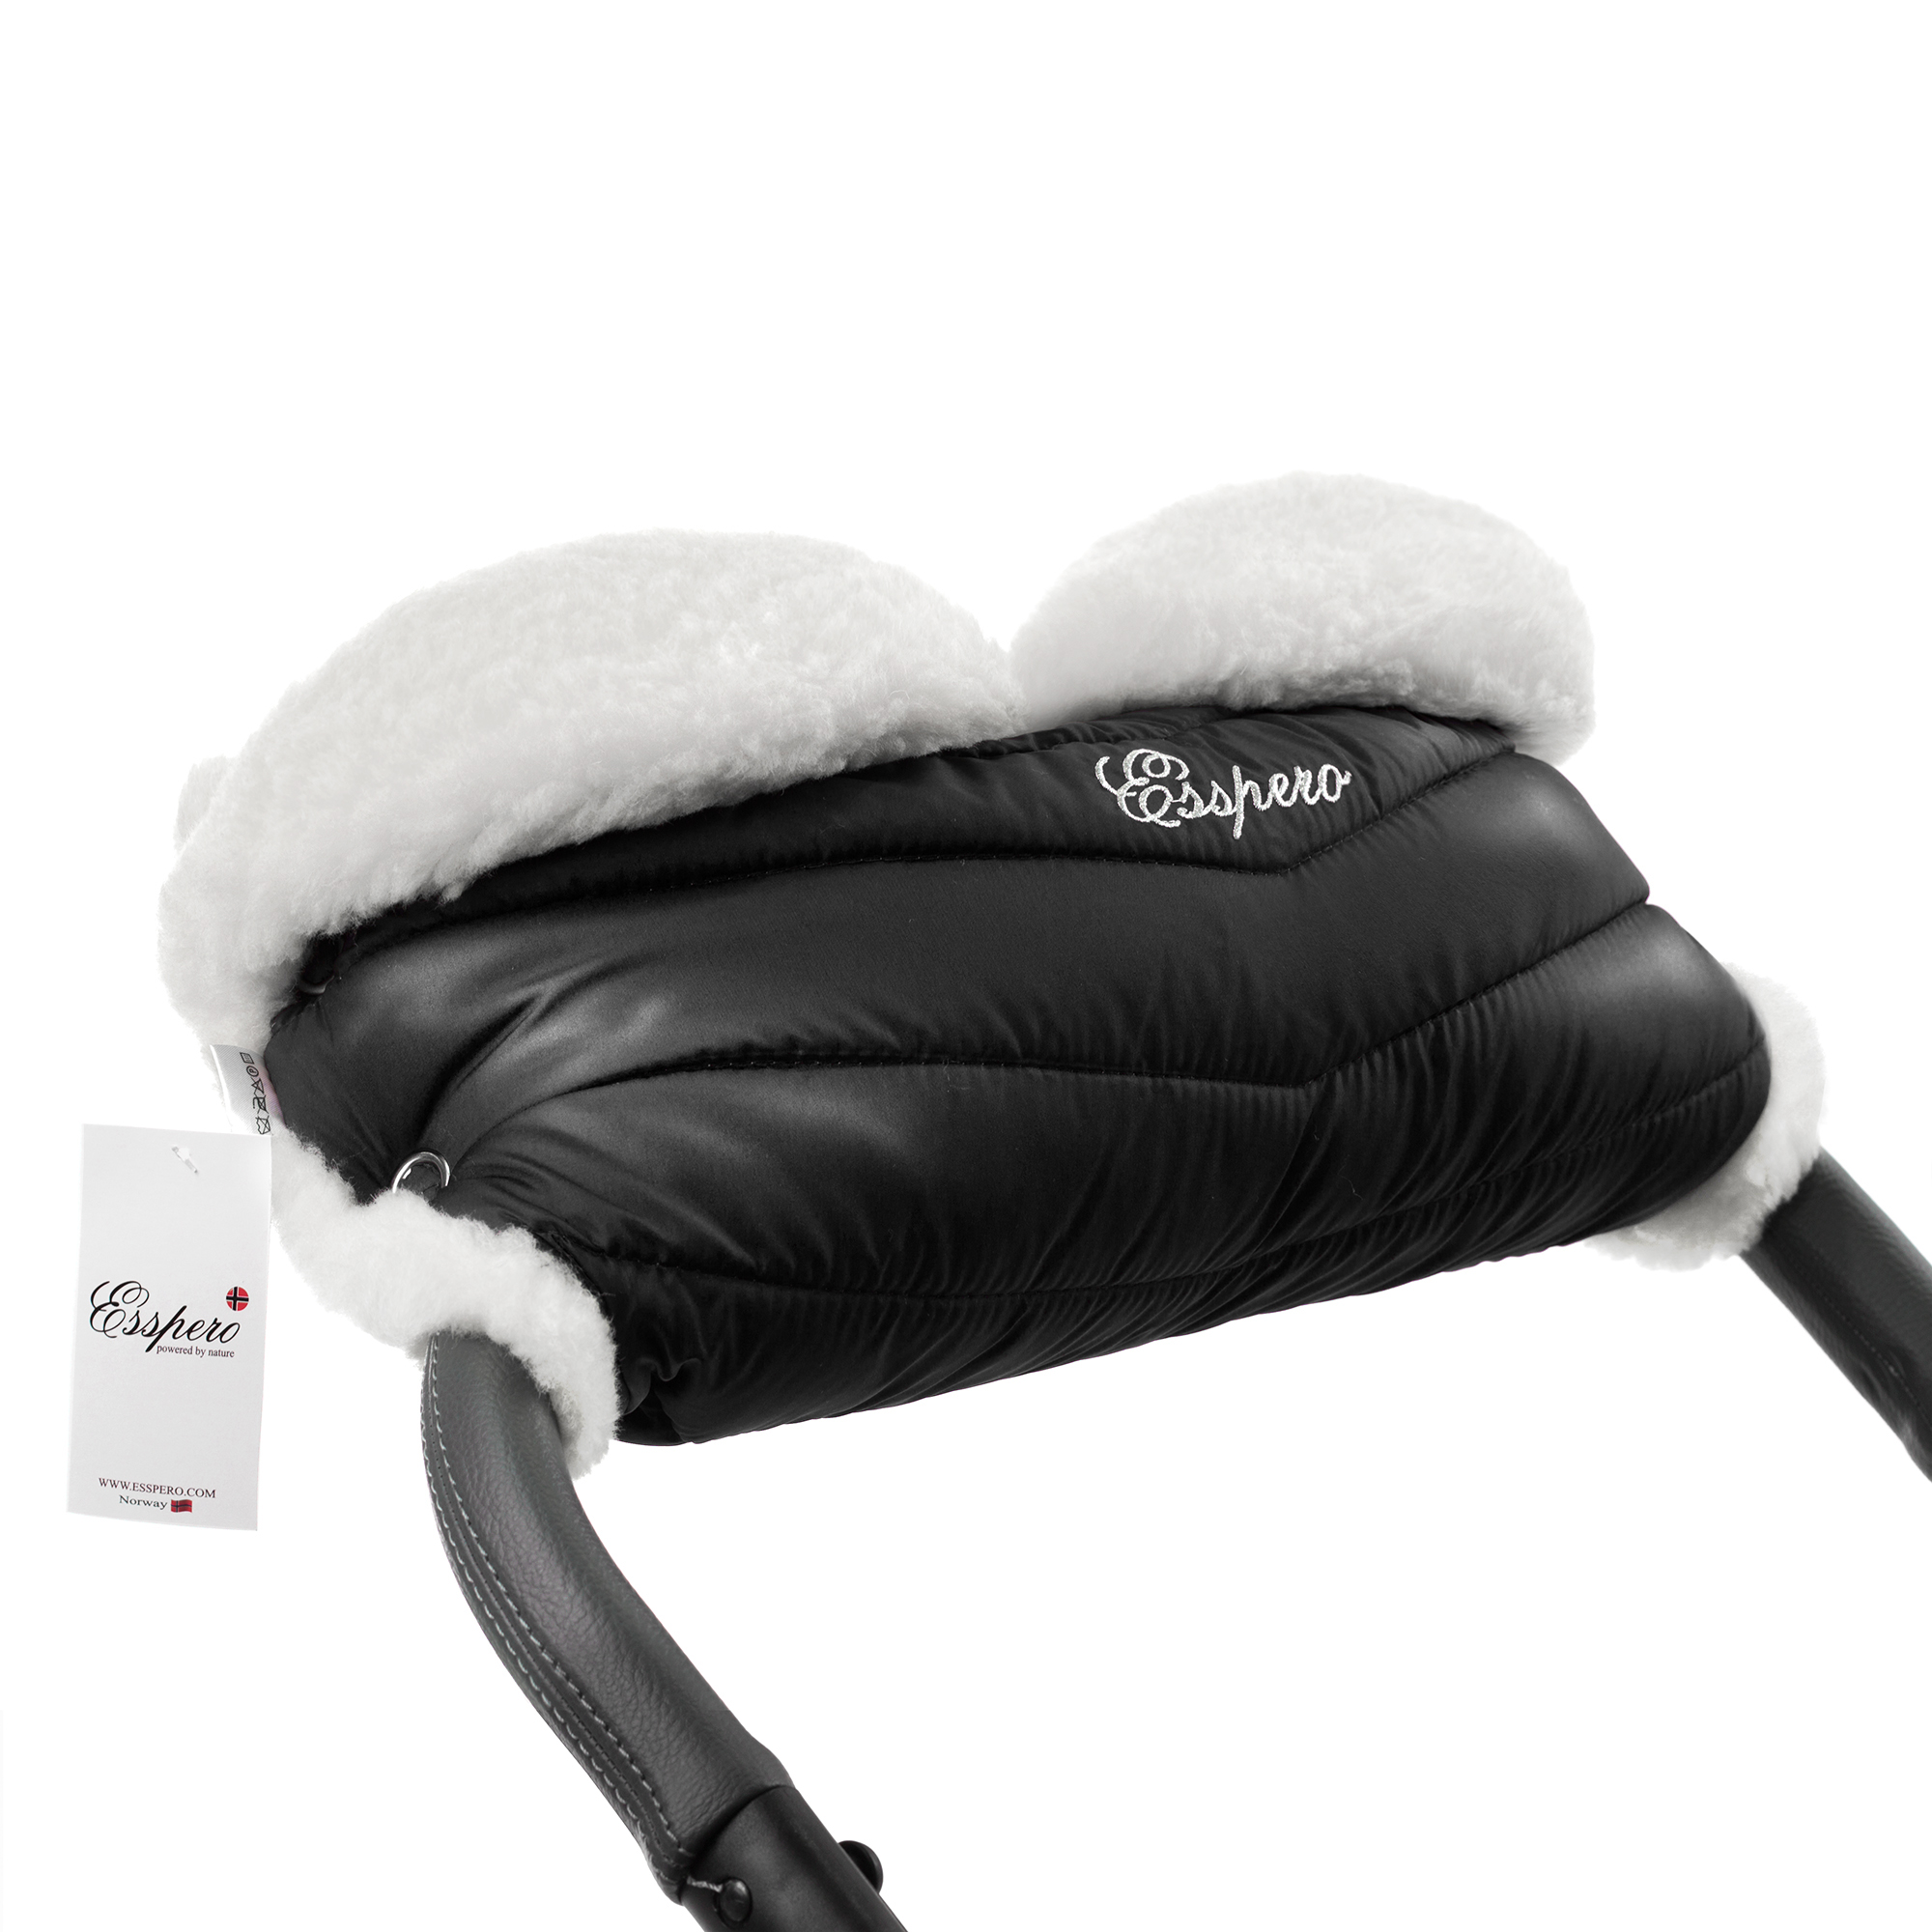 Муфта для рук на коляску Esspero Cosy White, натуральная шерсть, Black варежки на коляску stokke стокке stroller mittens onyx black 531201